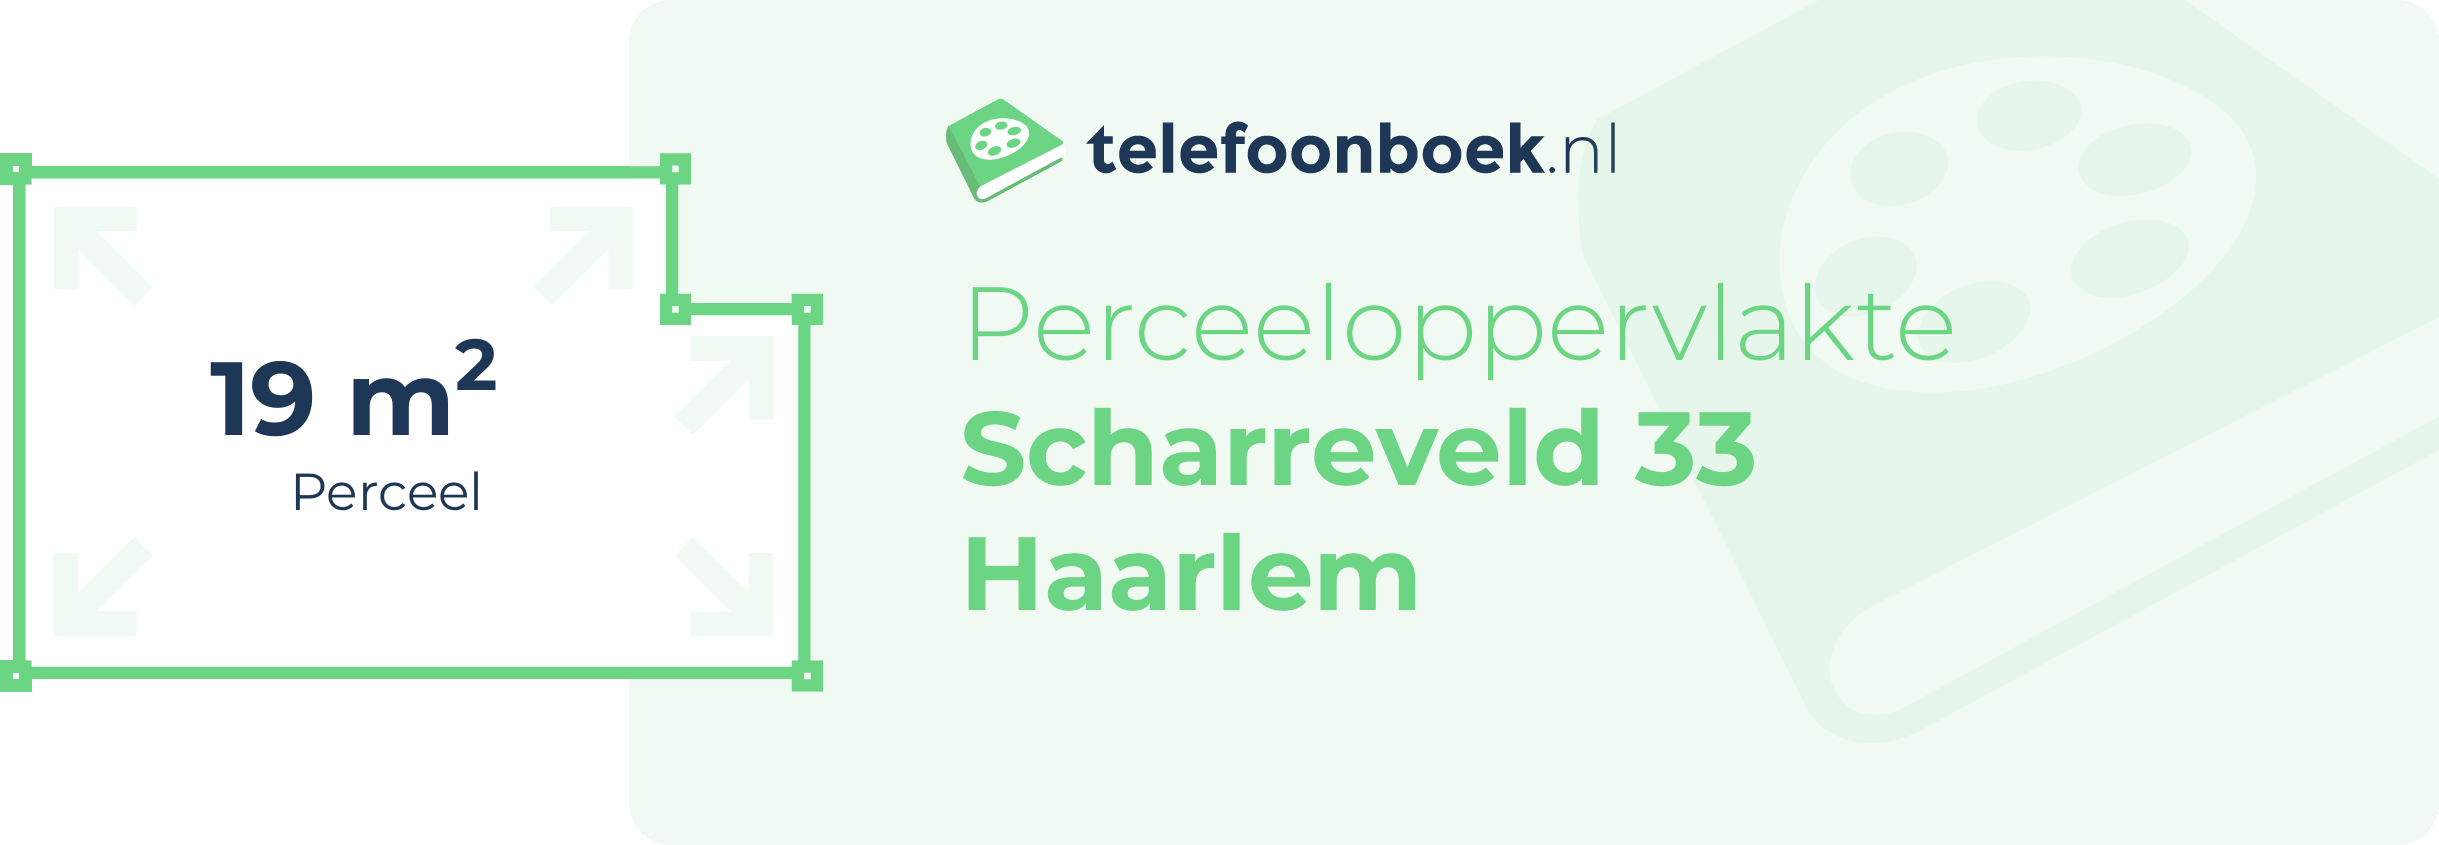 Perceeloppervlakte Scharreveld 33 Haarlem